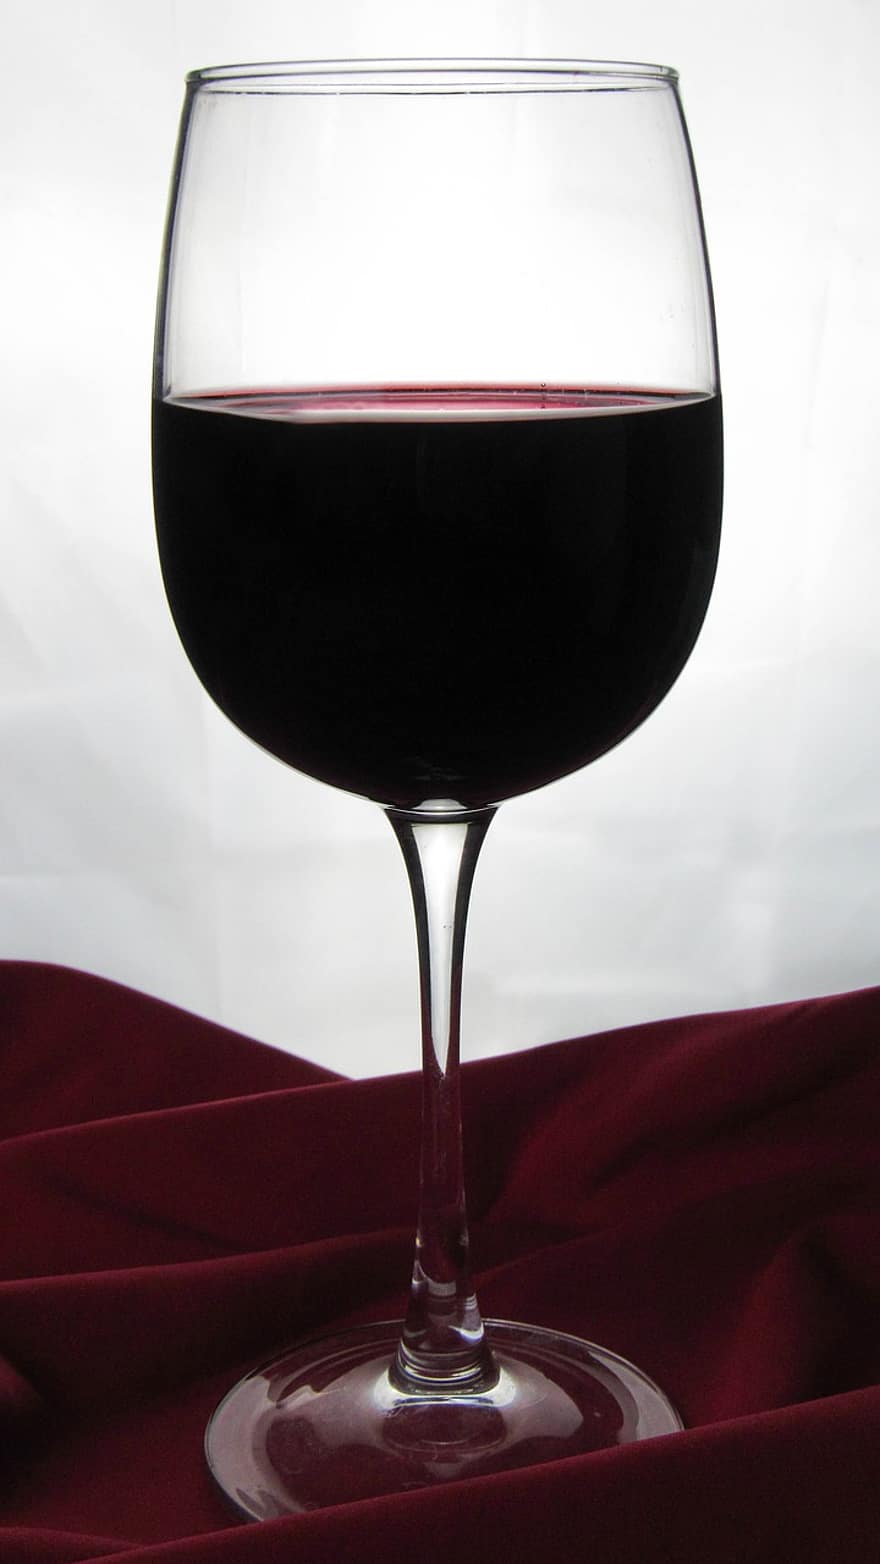 вино, бокал для вина, алкоголь, стакан, красное вино, напиток, щелок, выпивка, стакан для питья, жидкость, крупный план